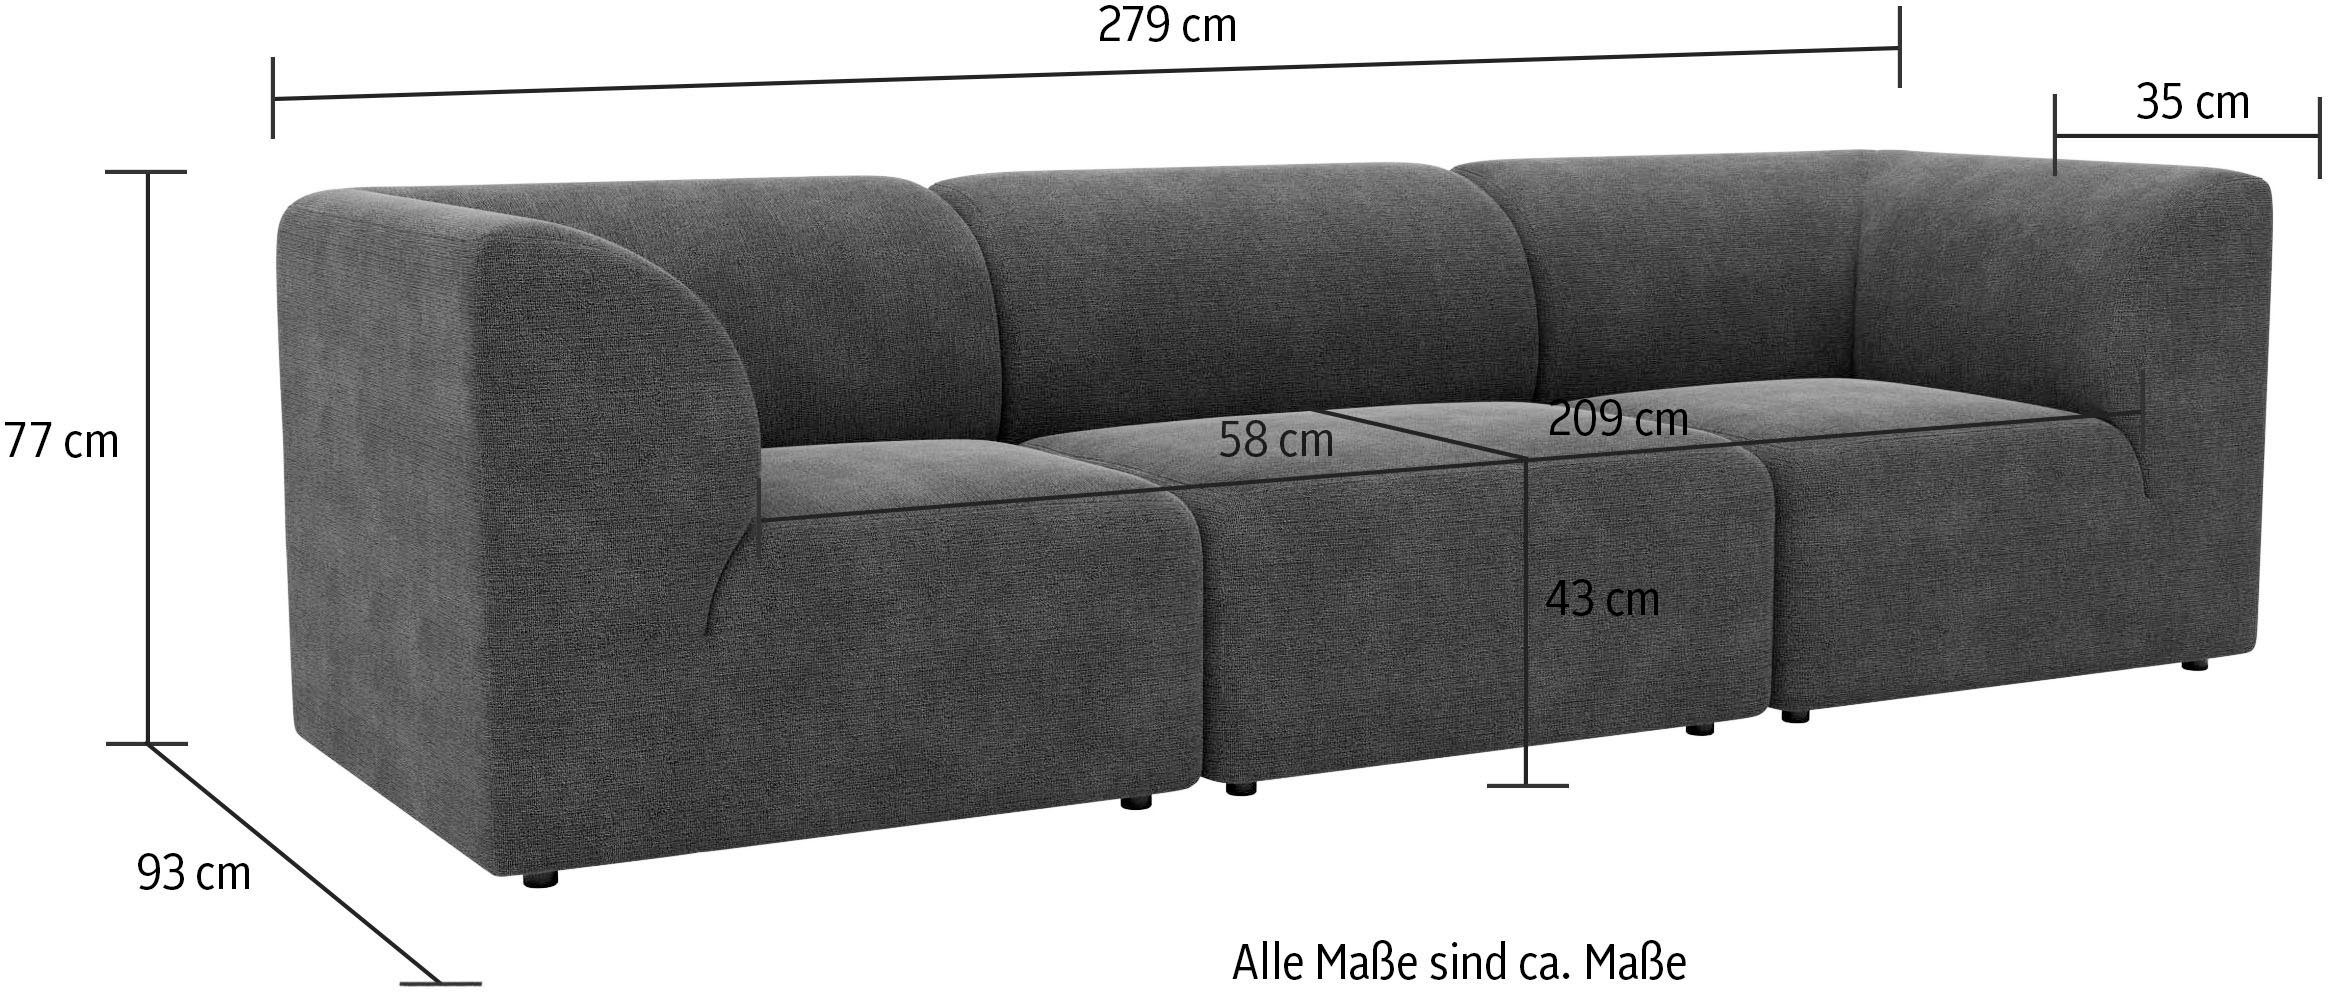 LeGer Home by Lena Gercke modulares Komfortschaum-Polsterung Sofa, Floria, Farben, in trendigen 3-Sitzer mit